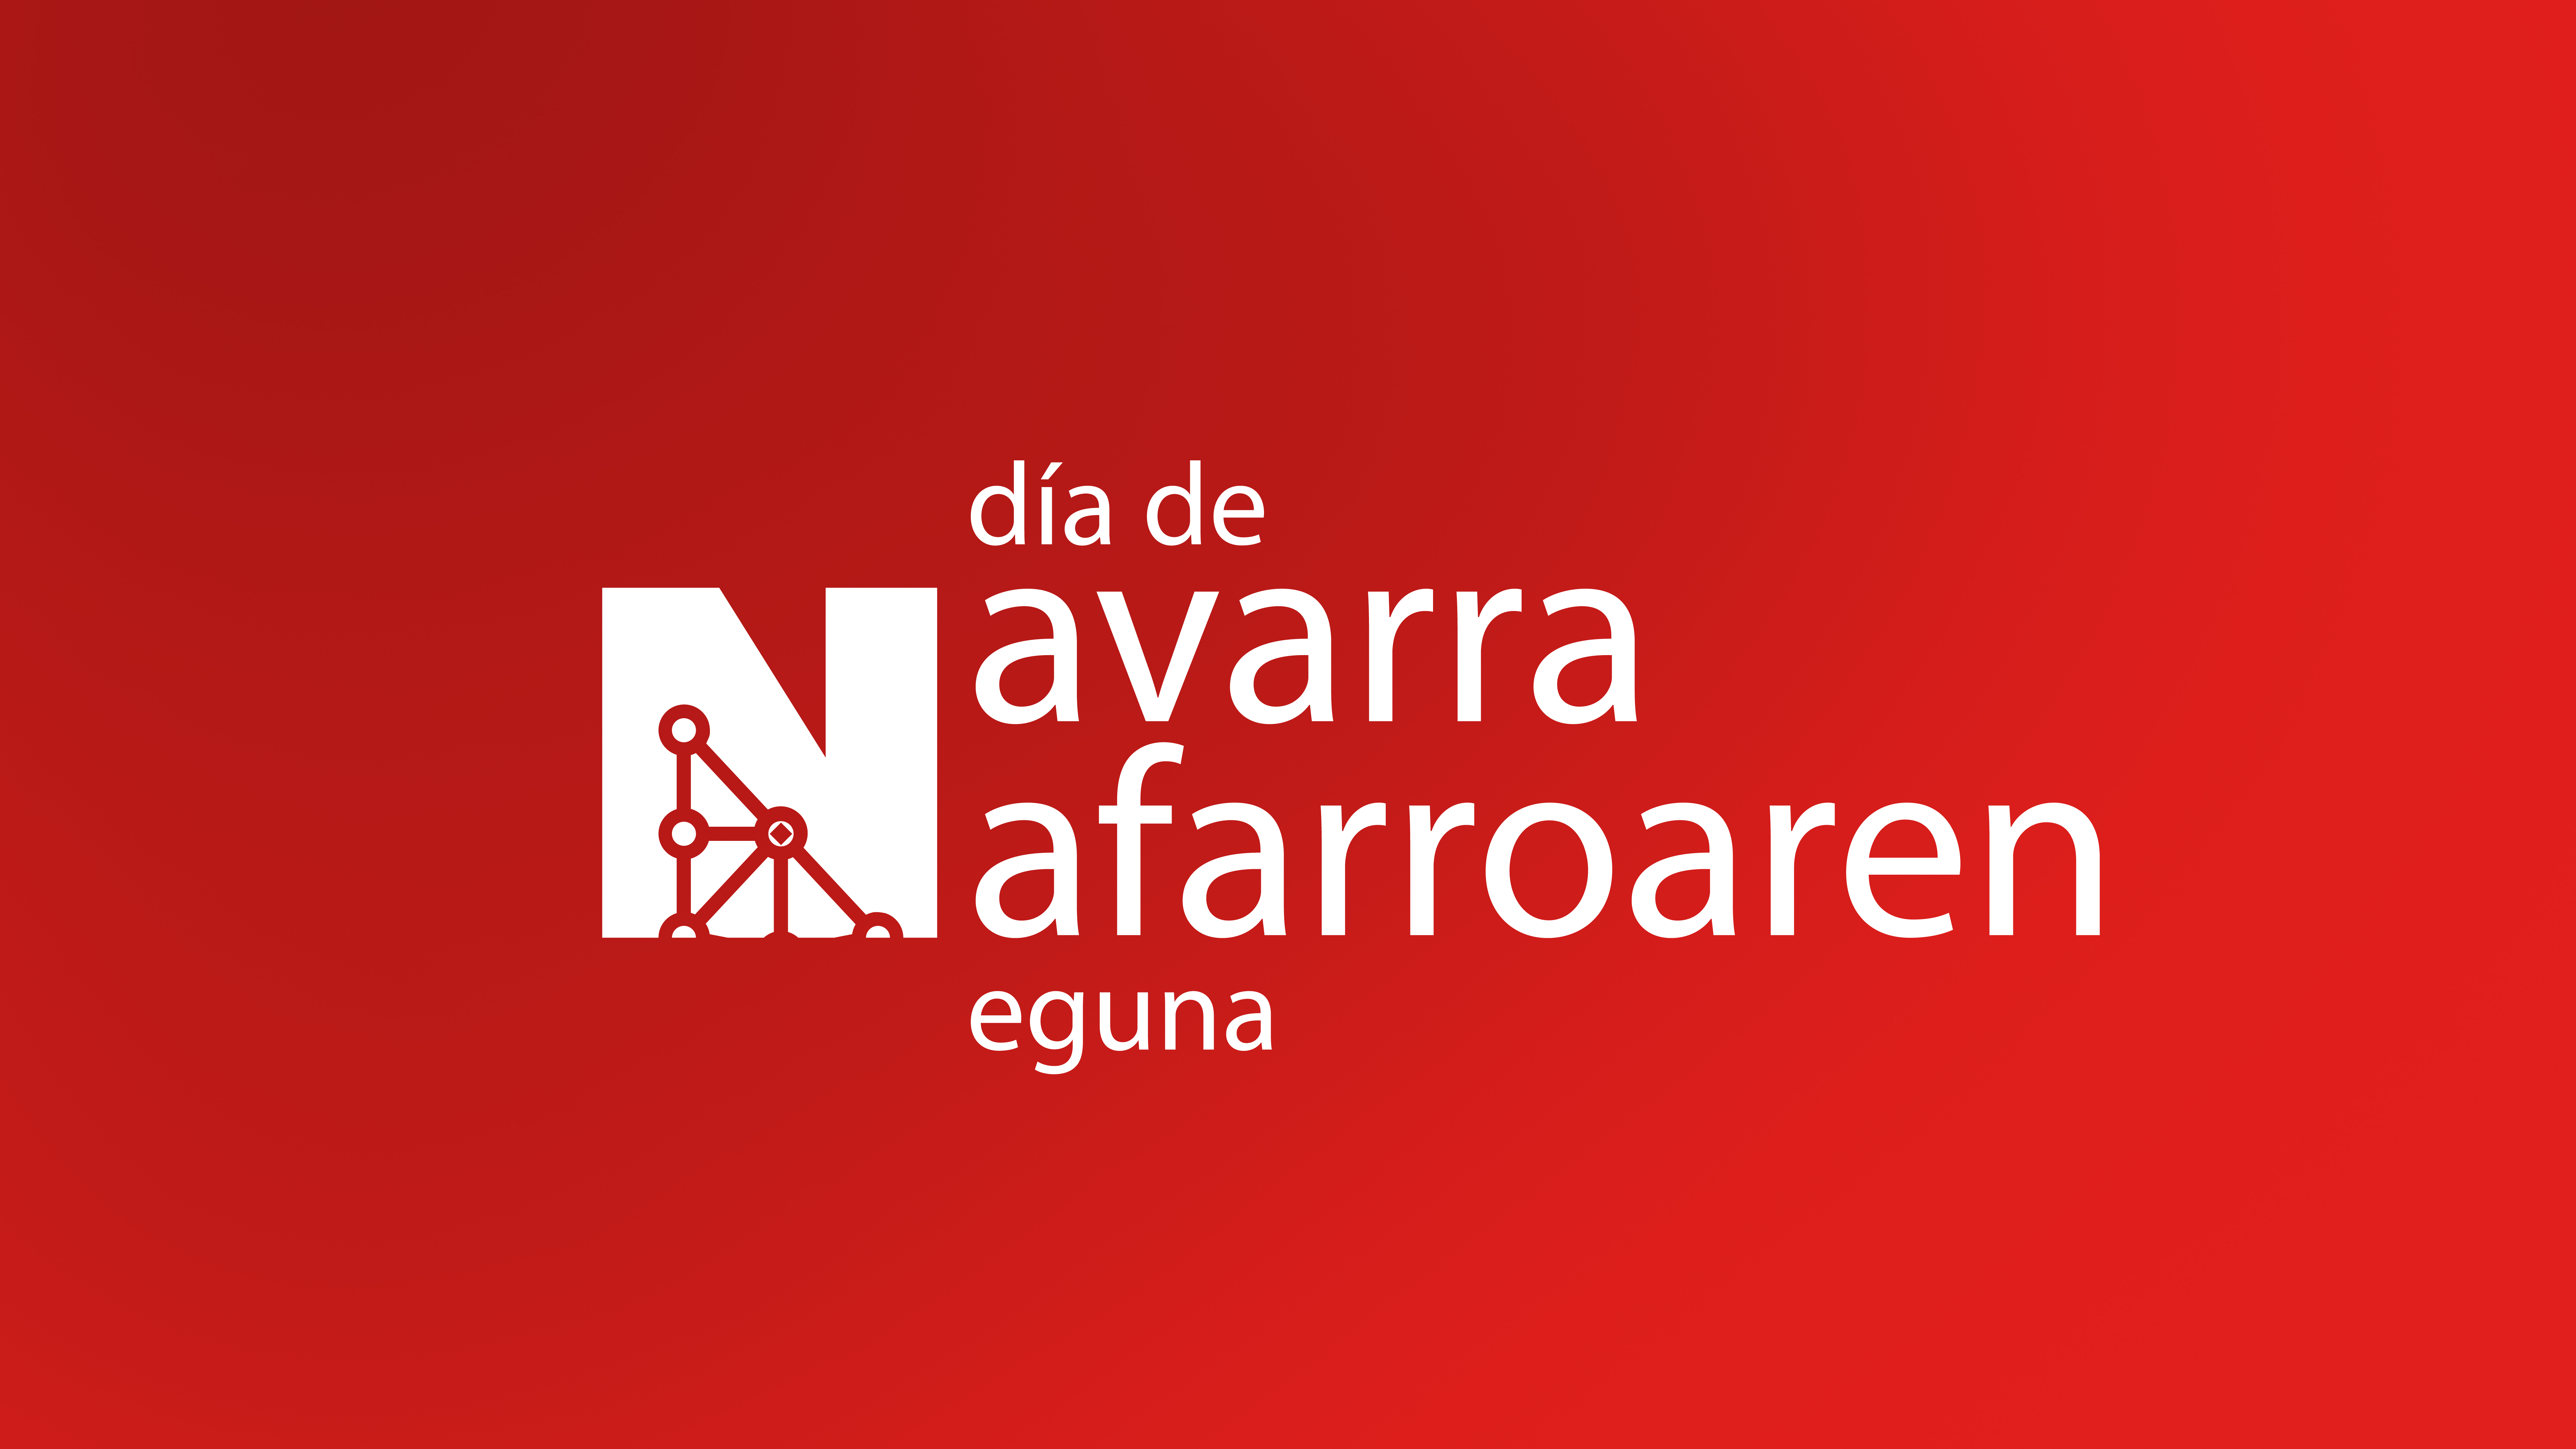 Fotografía del cartel promocional del Día de Navarra